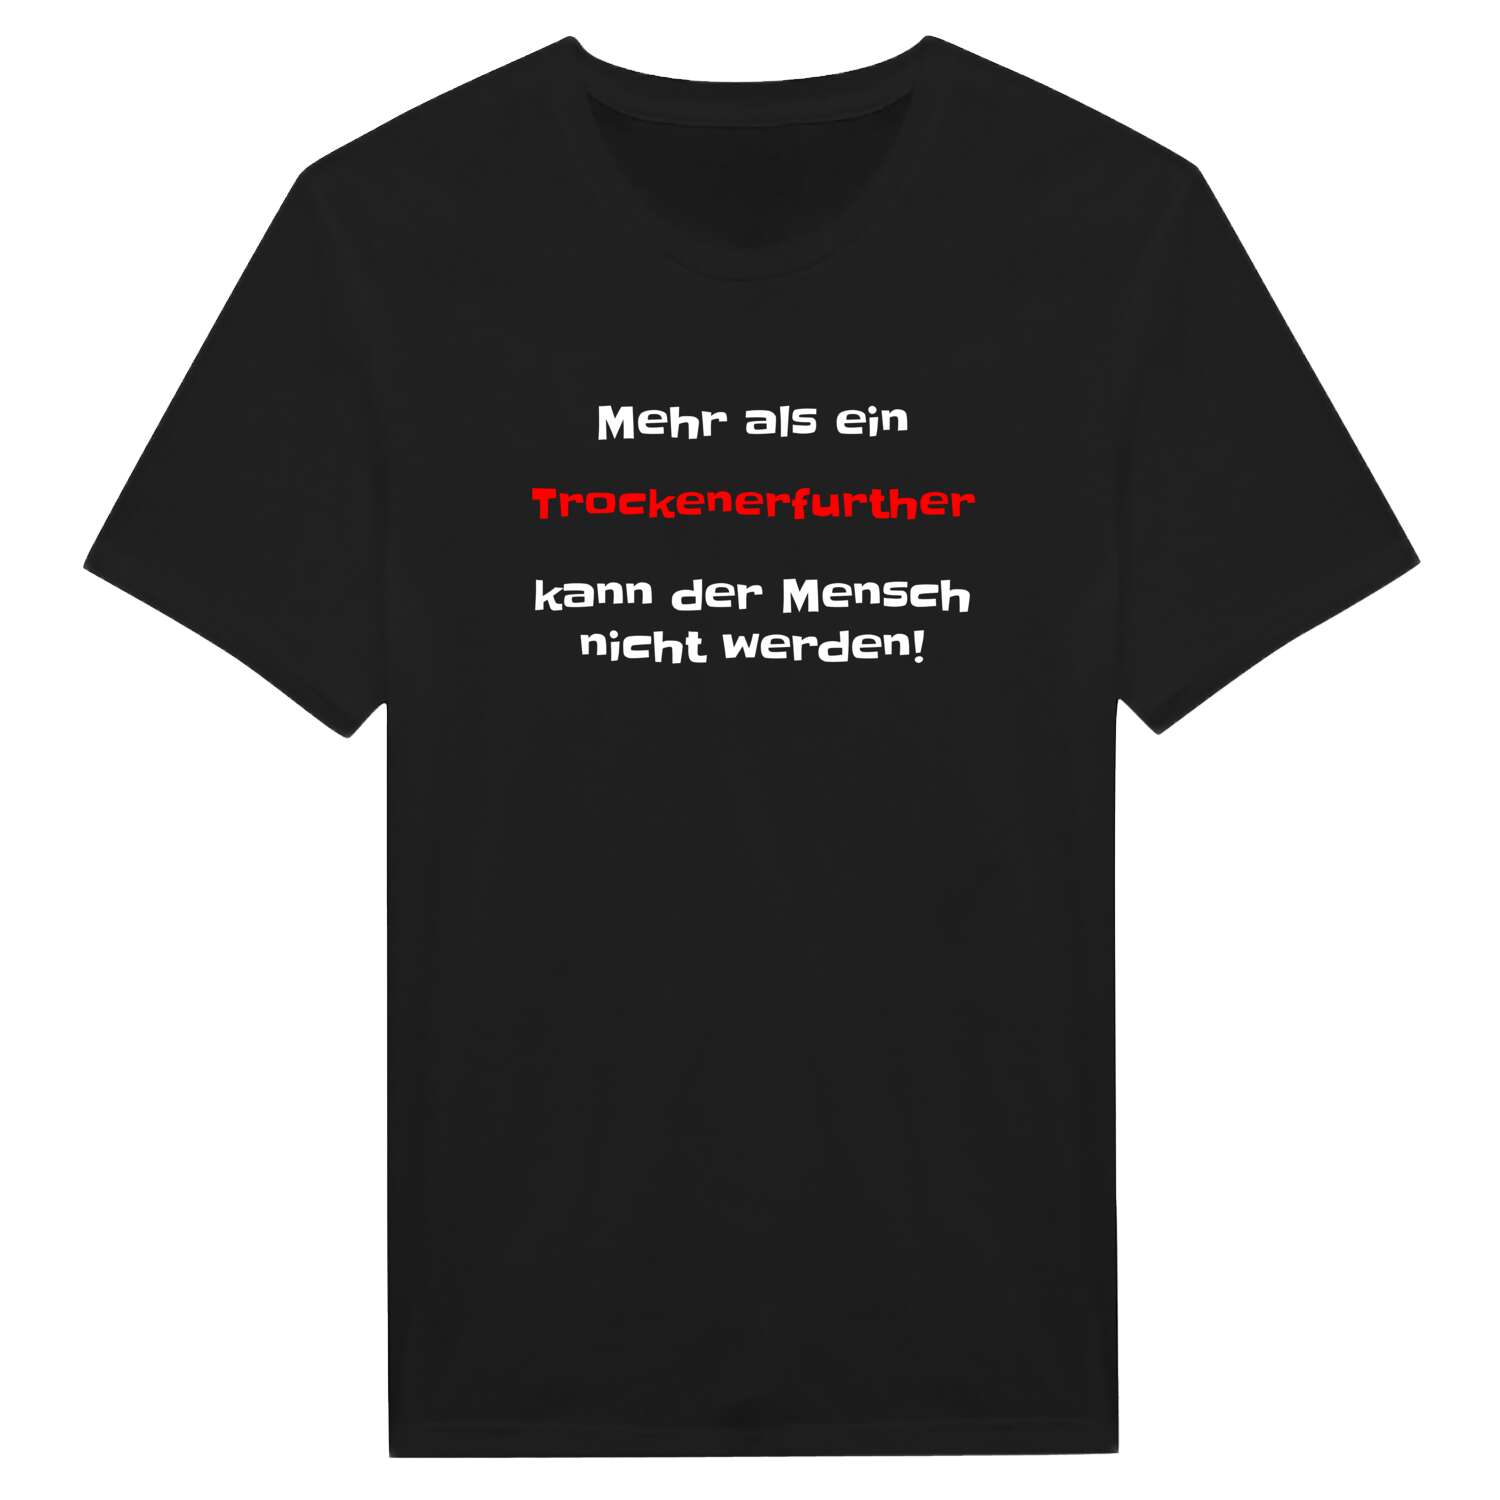 Trockenerfurth T-Shirt »Mehr als ein«